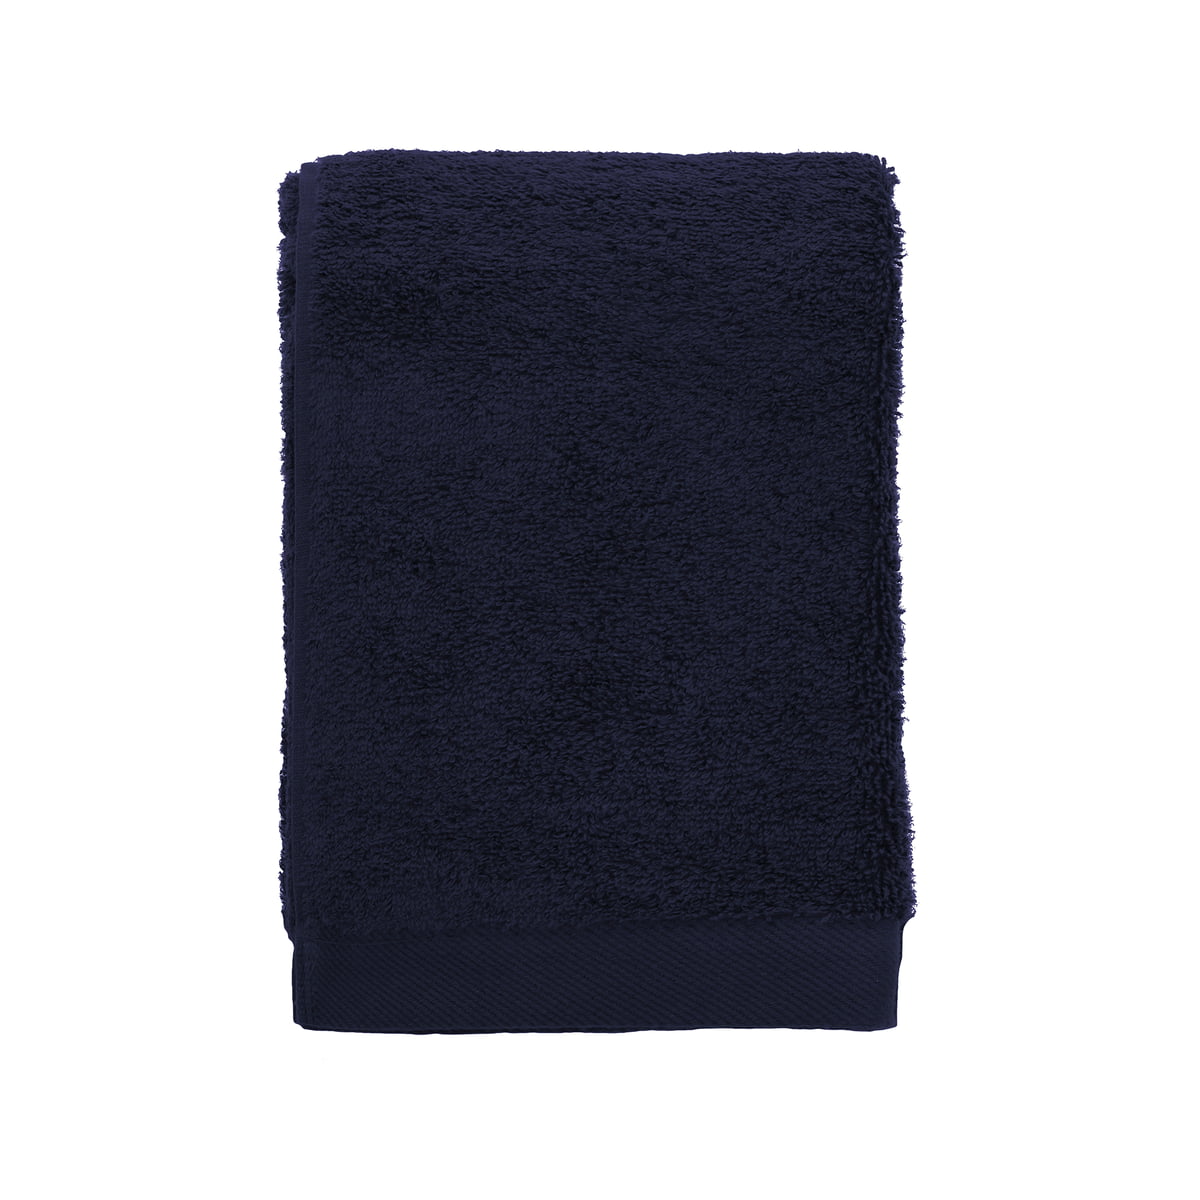 södahl - comfort serviette de bain, 50 x 100 cm, bleu marine